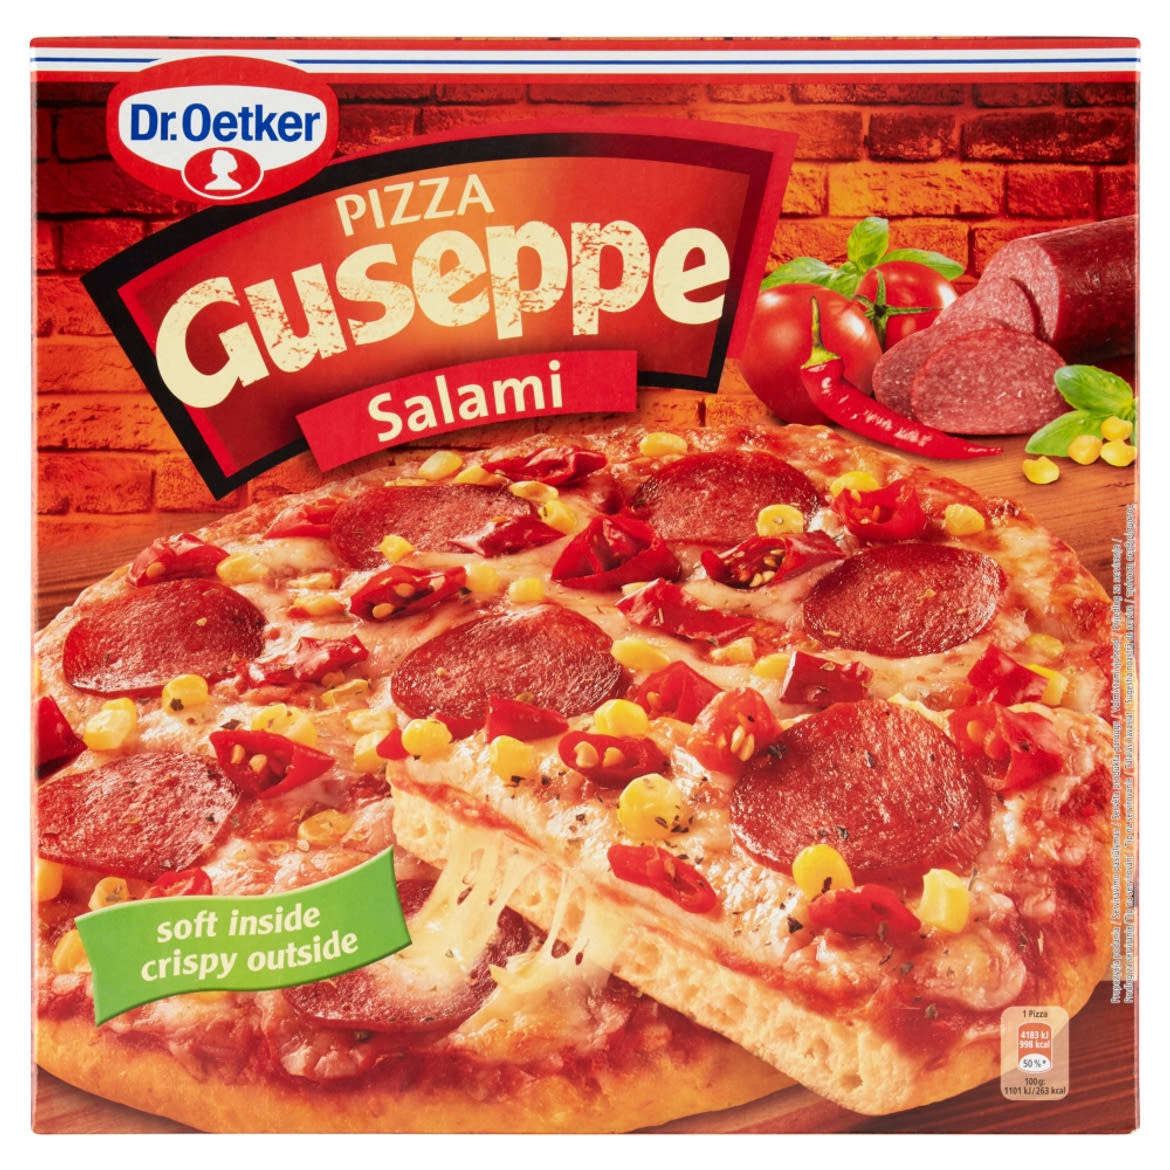 Dr. Oetker Guseppe gyorsfagyasztott szalámis pizza